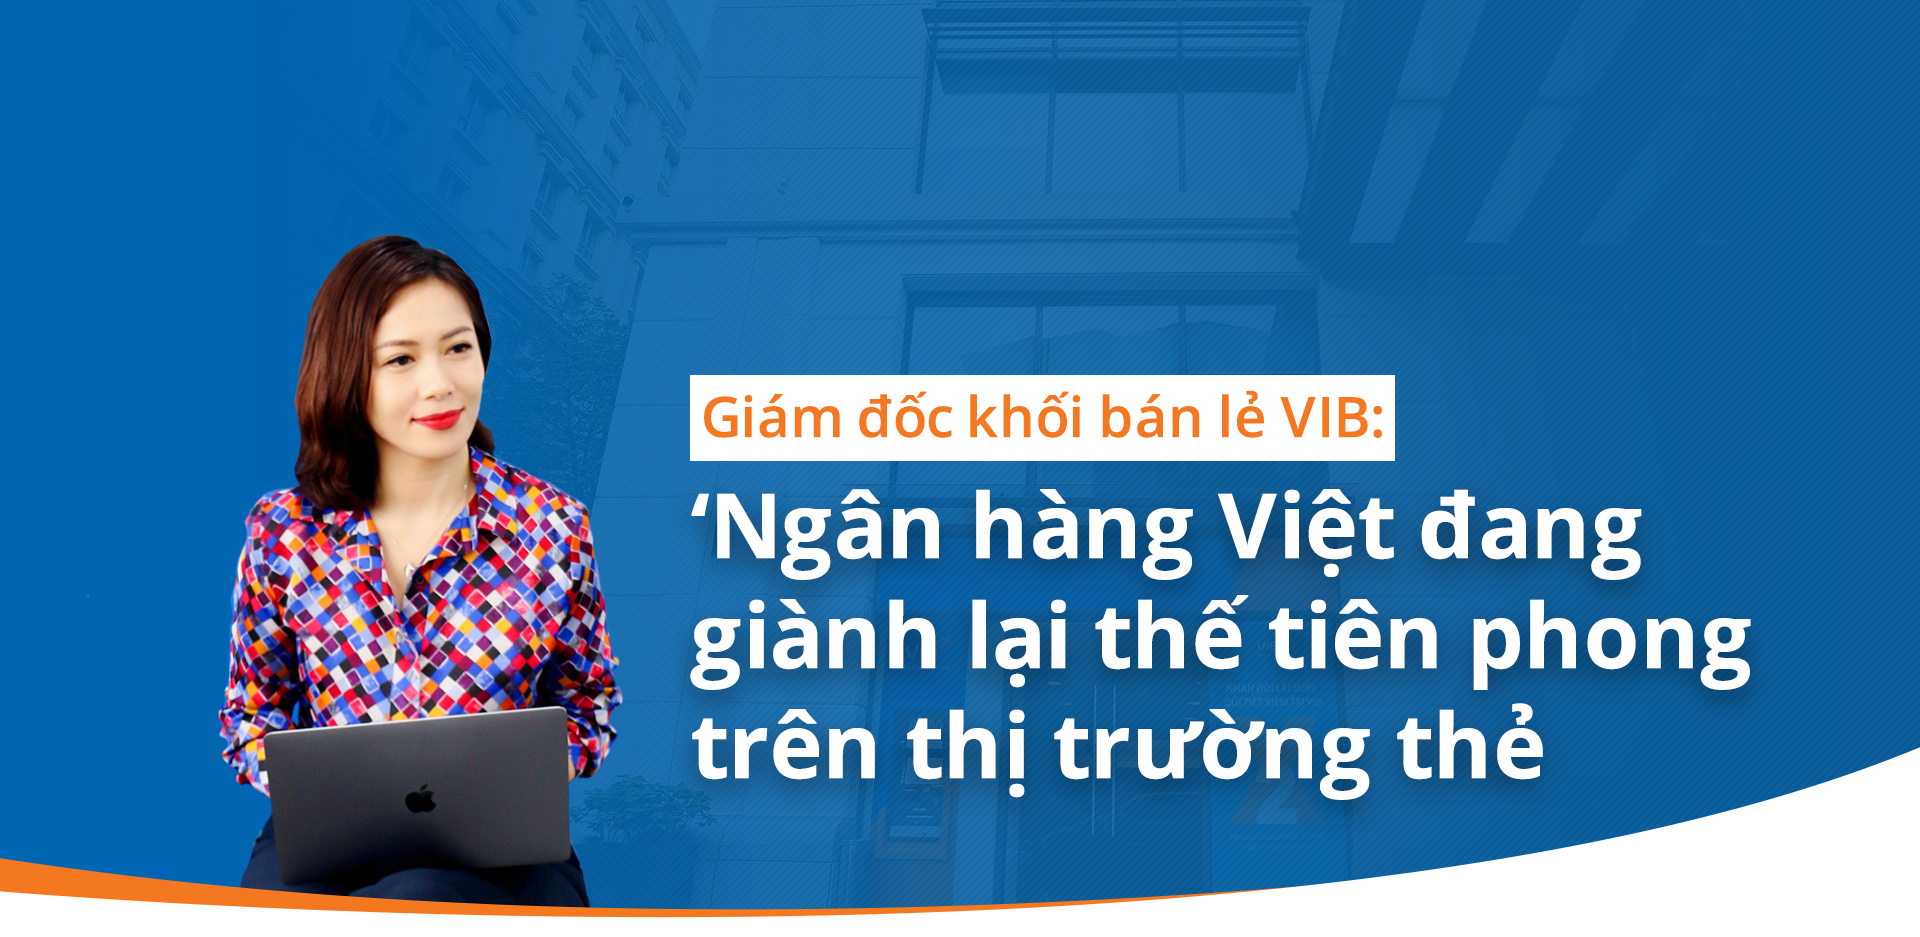 Giám đốc khối bán lẻ VIB: 'Ngân hàng Việt đang giành lại thế tiên phong trên thị trường thẻ'